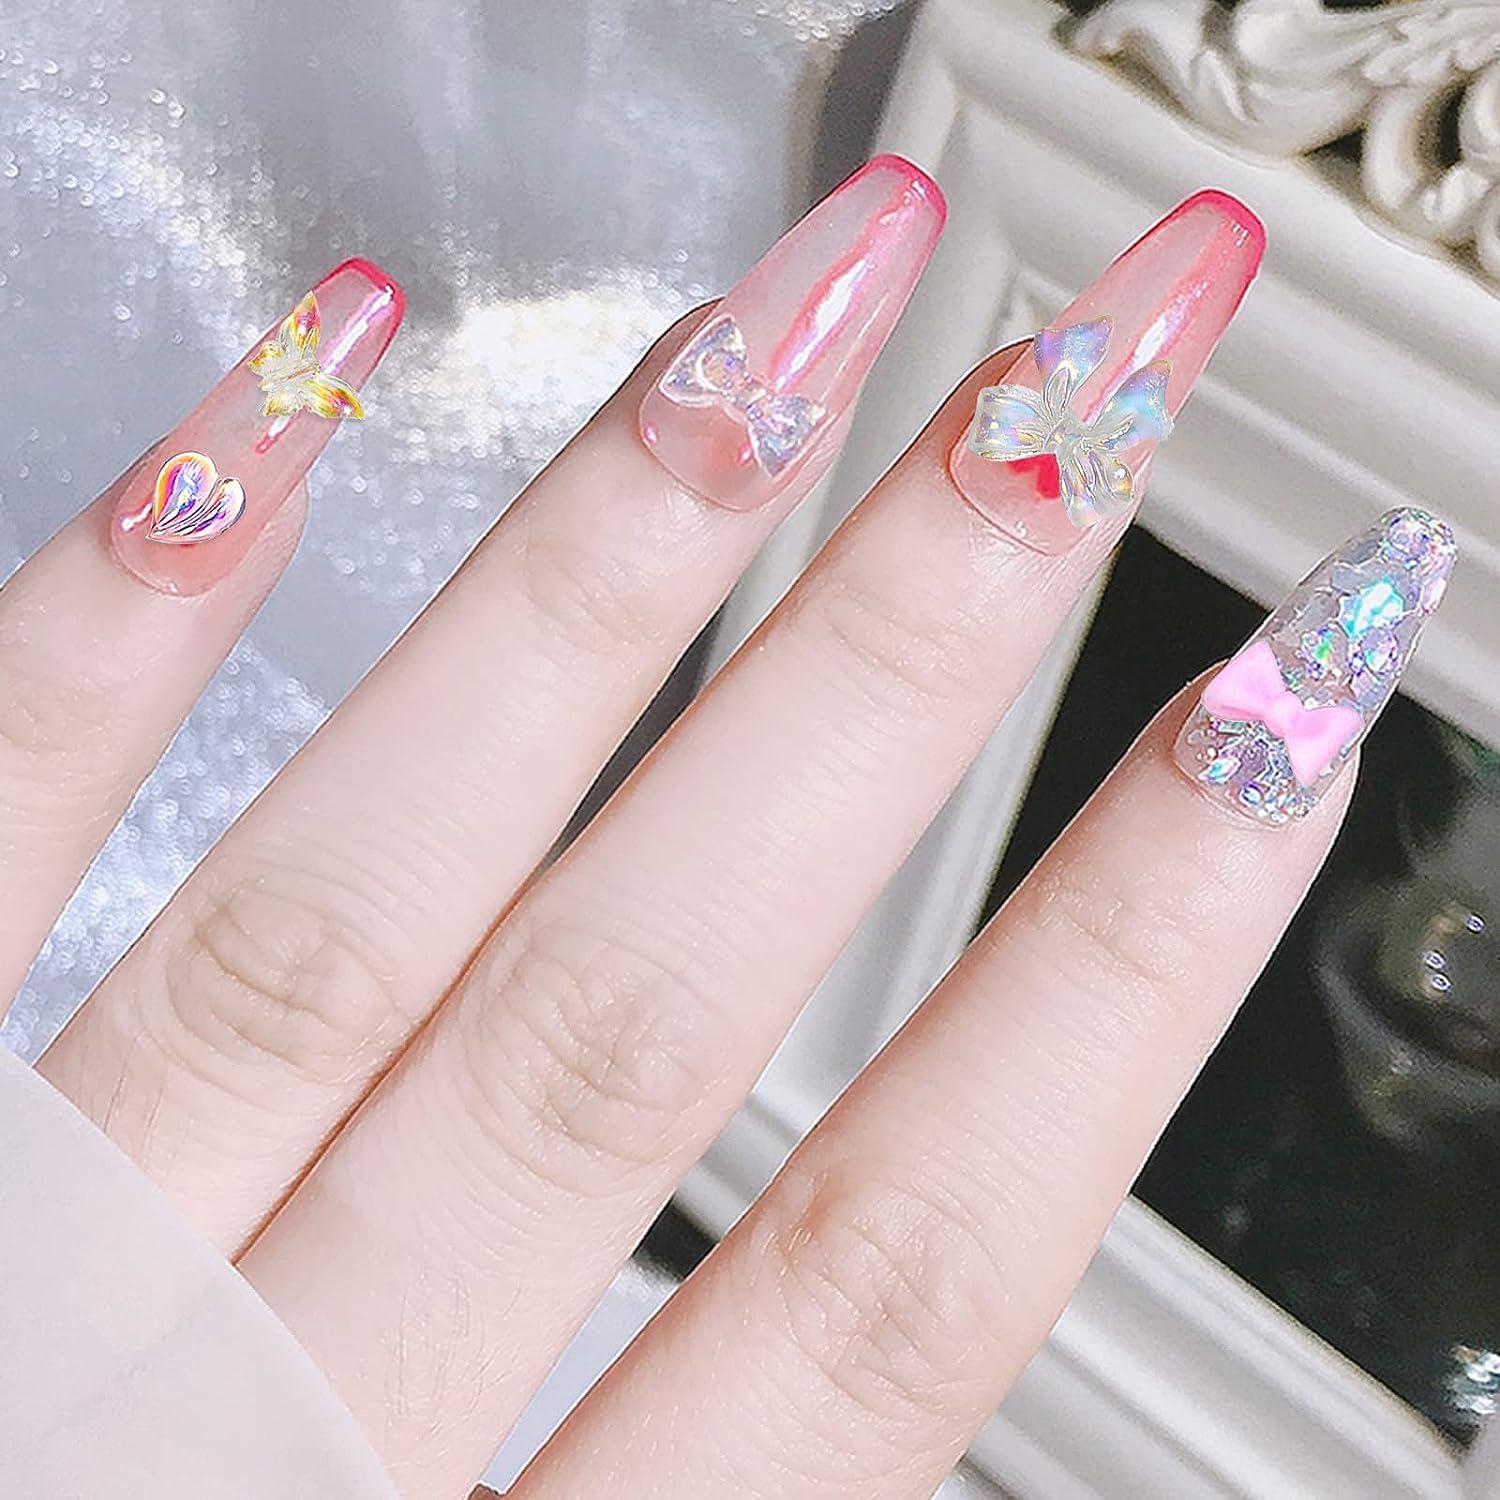 6 Pairs Cute Kawaii Nail Charms - Pink Set for Nail Decoration